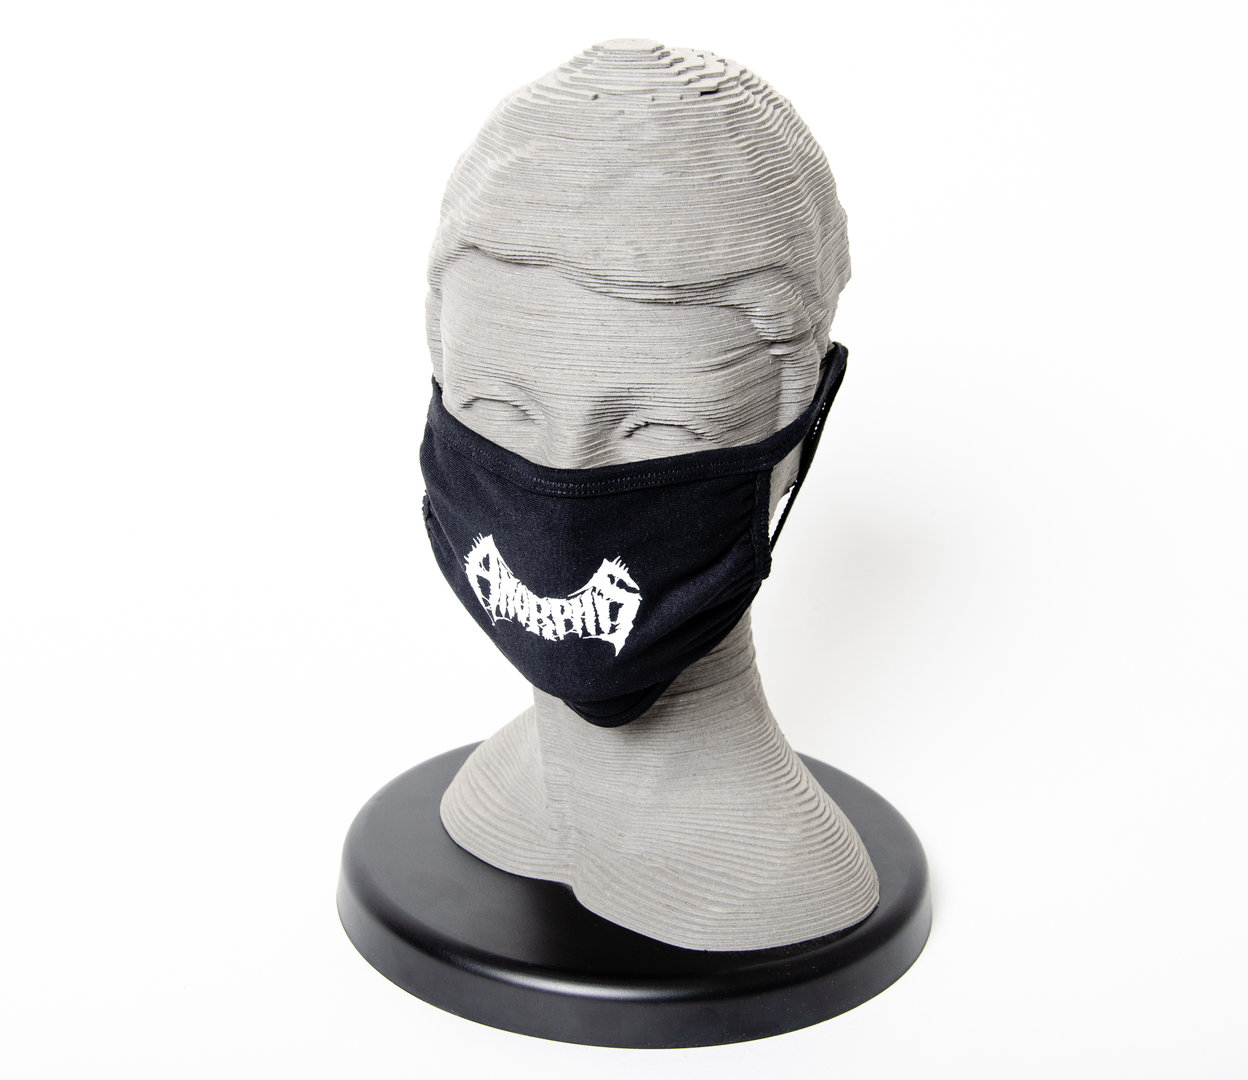 Amorphis: Staubmaske bedruckt mit neuen oder alten Logo